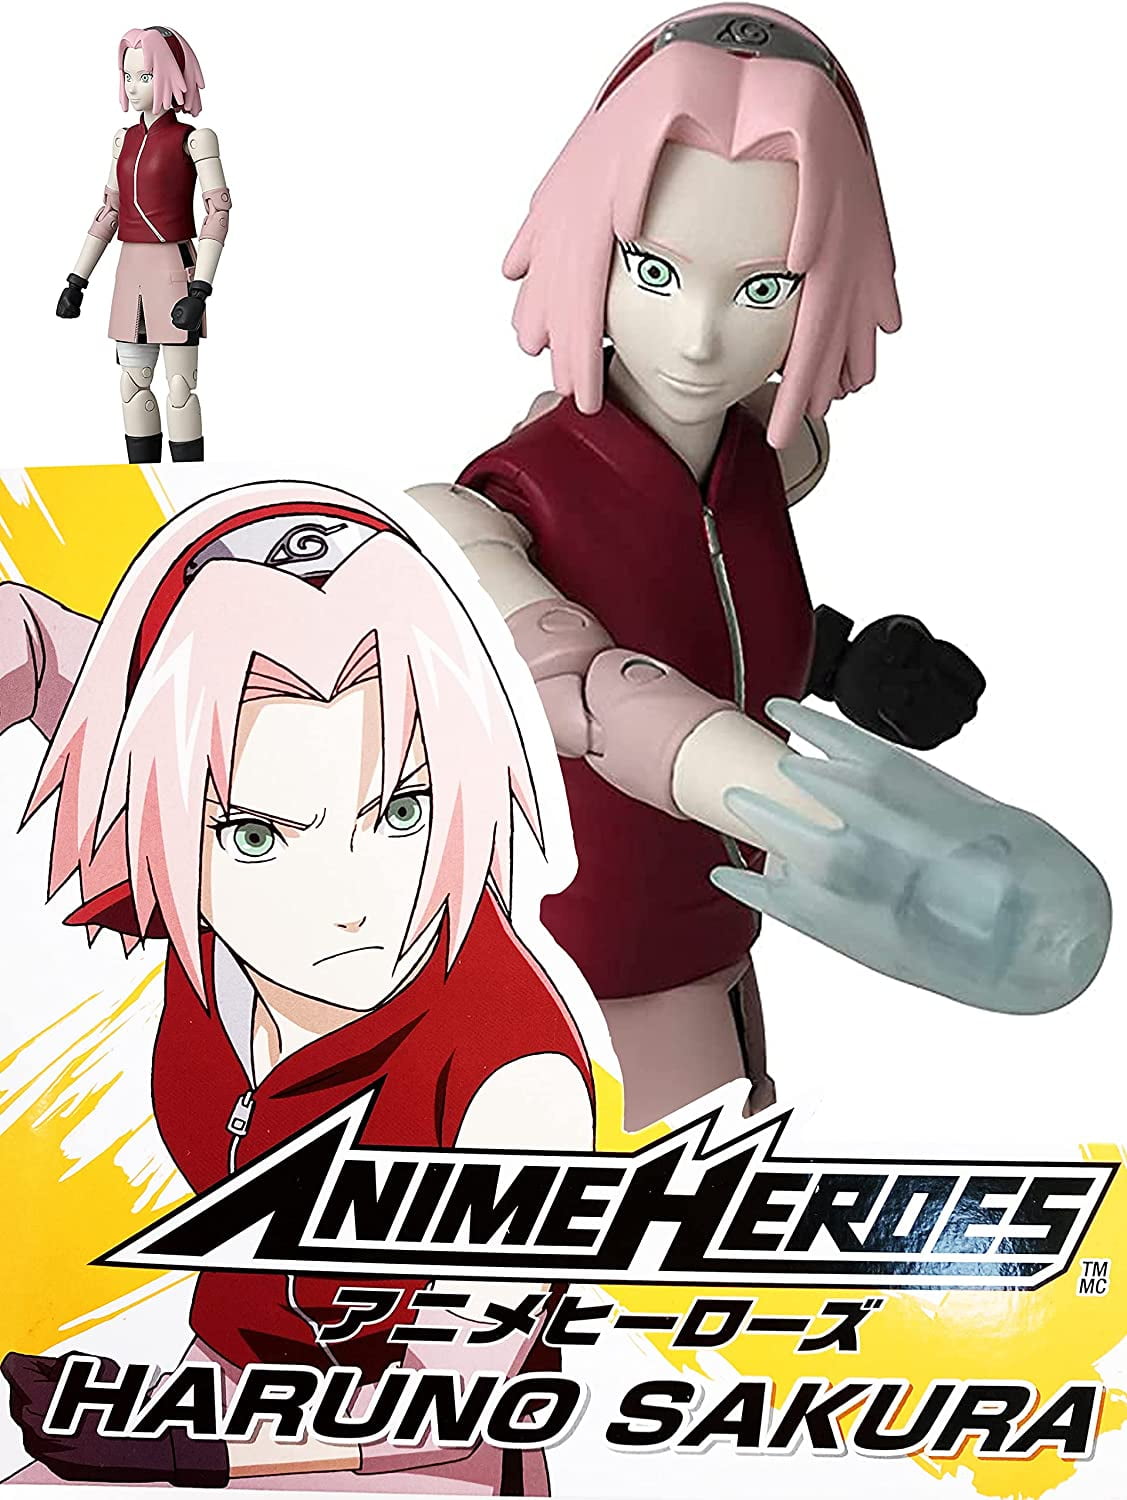 Bandai Naruto Shippuden Haruno Sakura Anime Heroes 6.5-in Action Figure